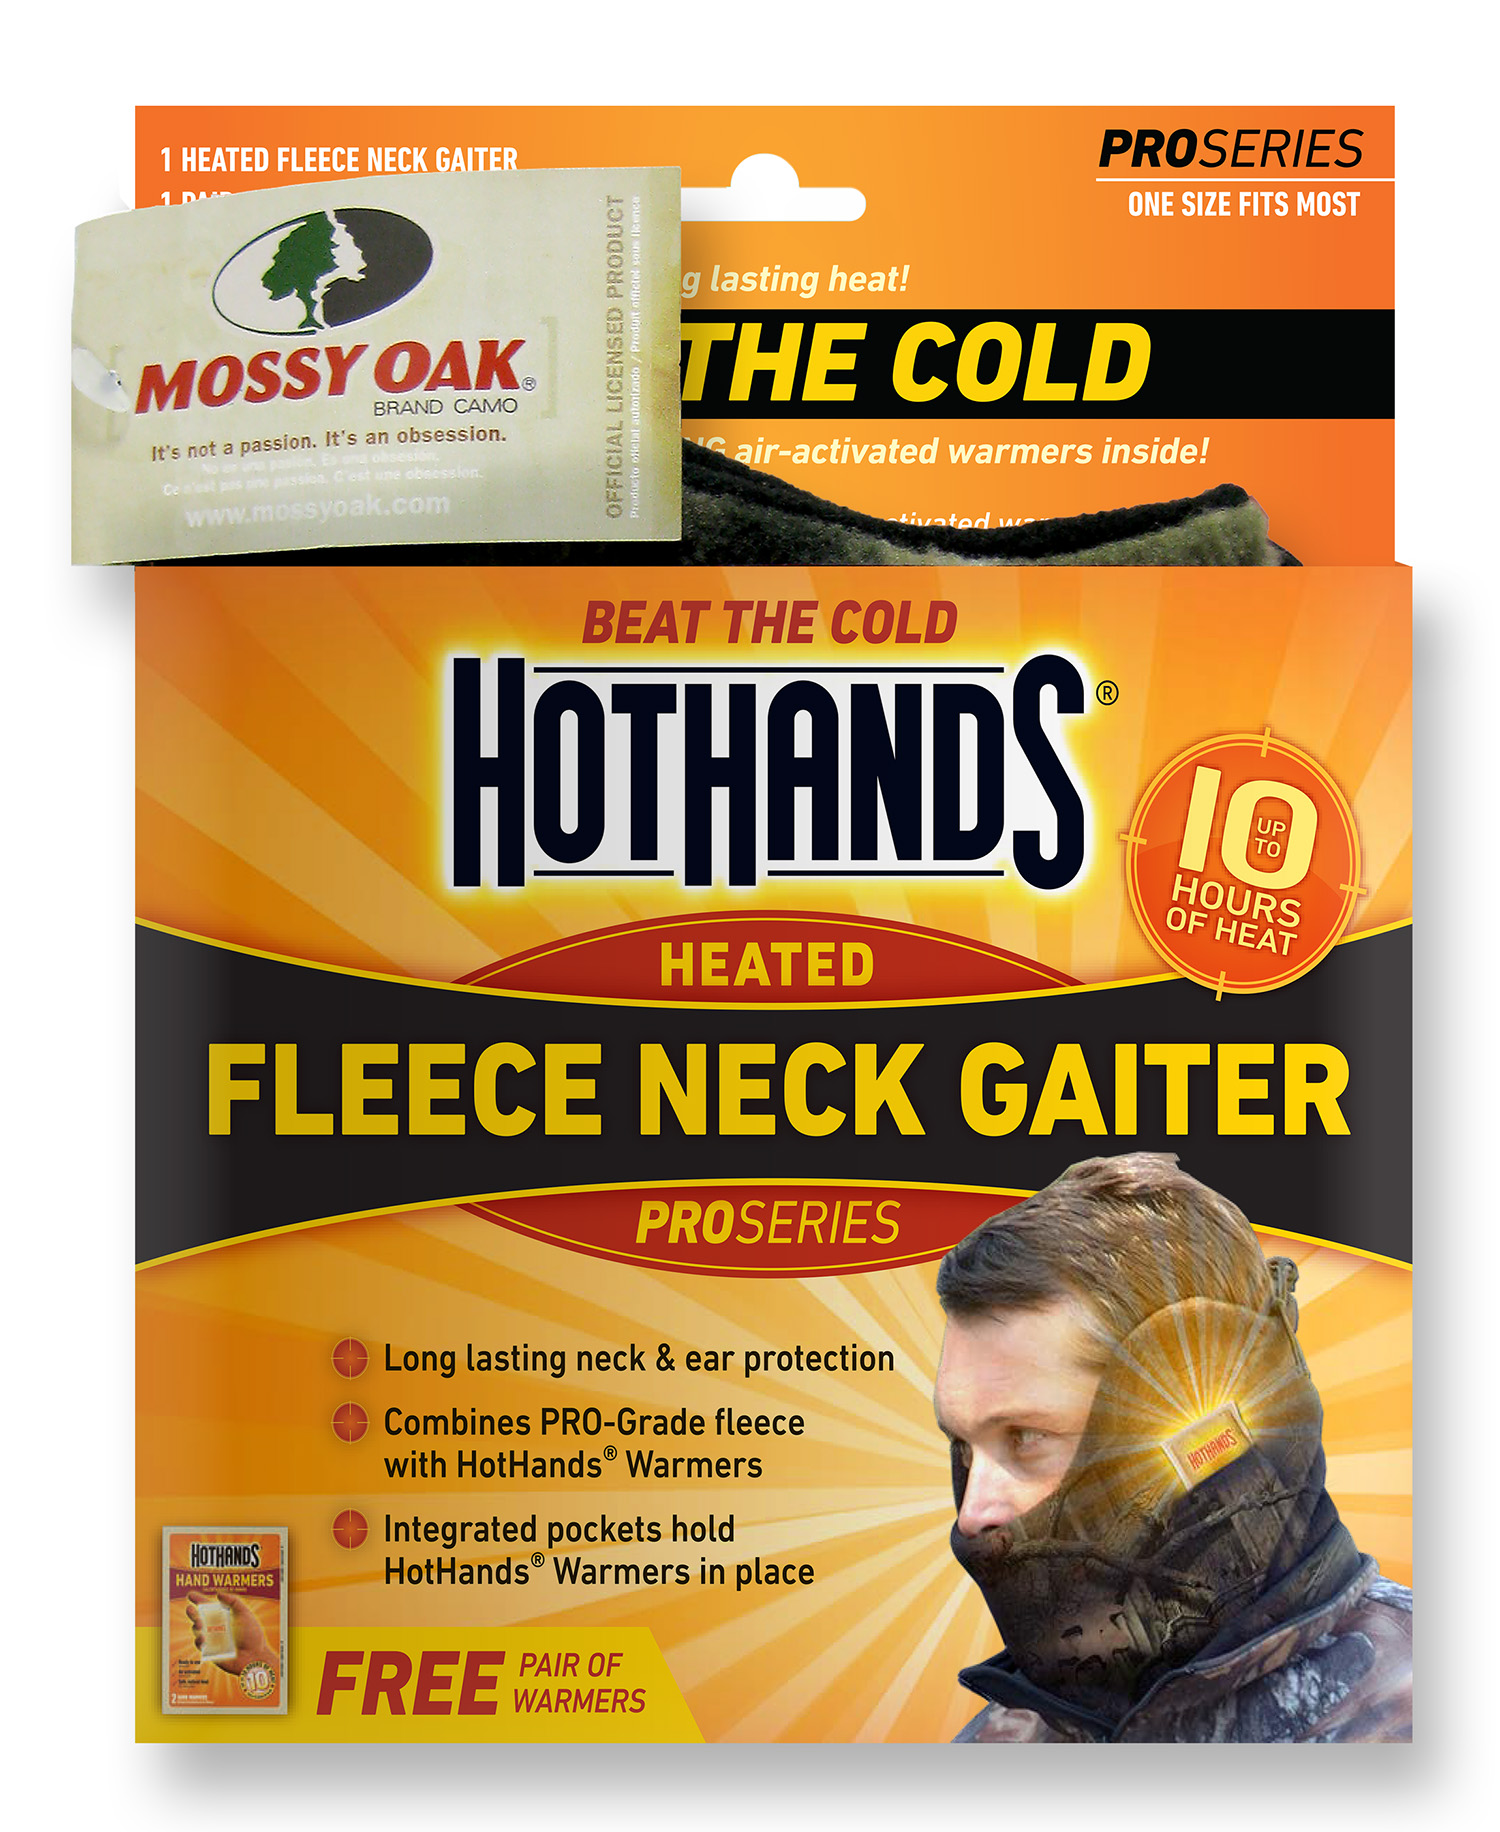 HotHands NECKGAITMO Pro Series Neck Gaiter Fleece Mossy Oak OSFA Neck